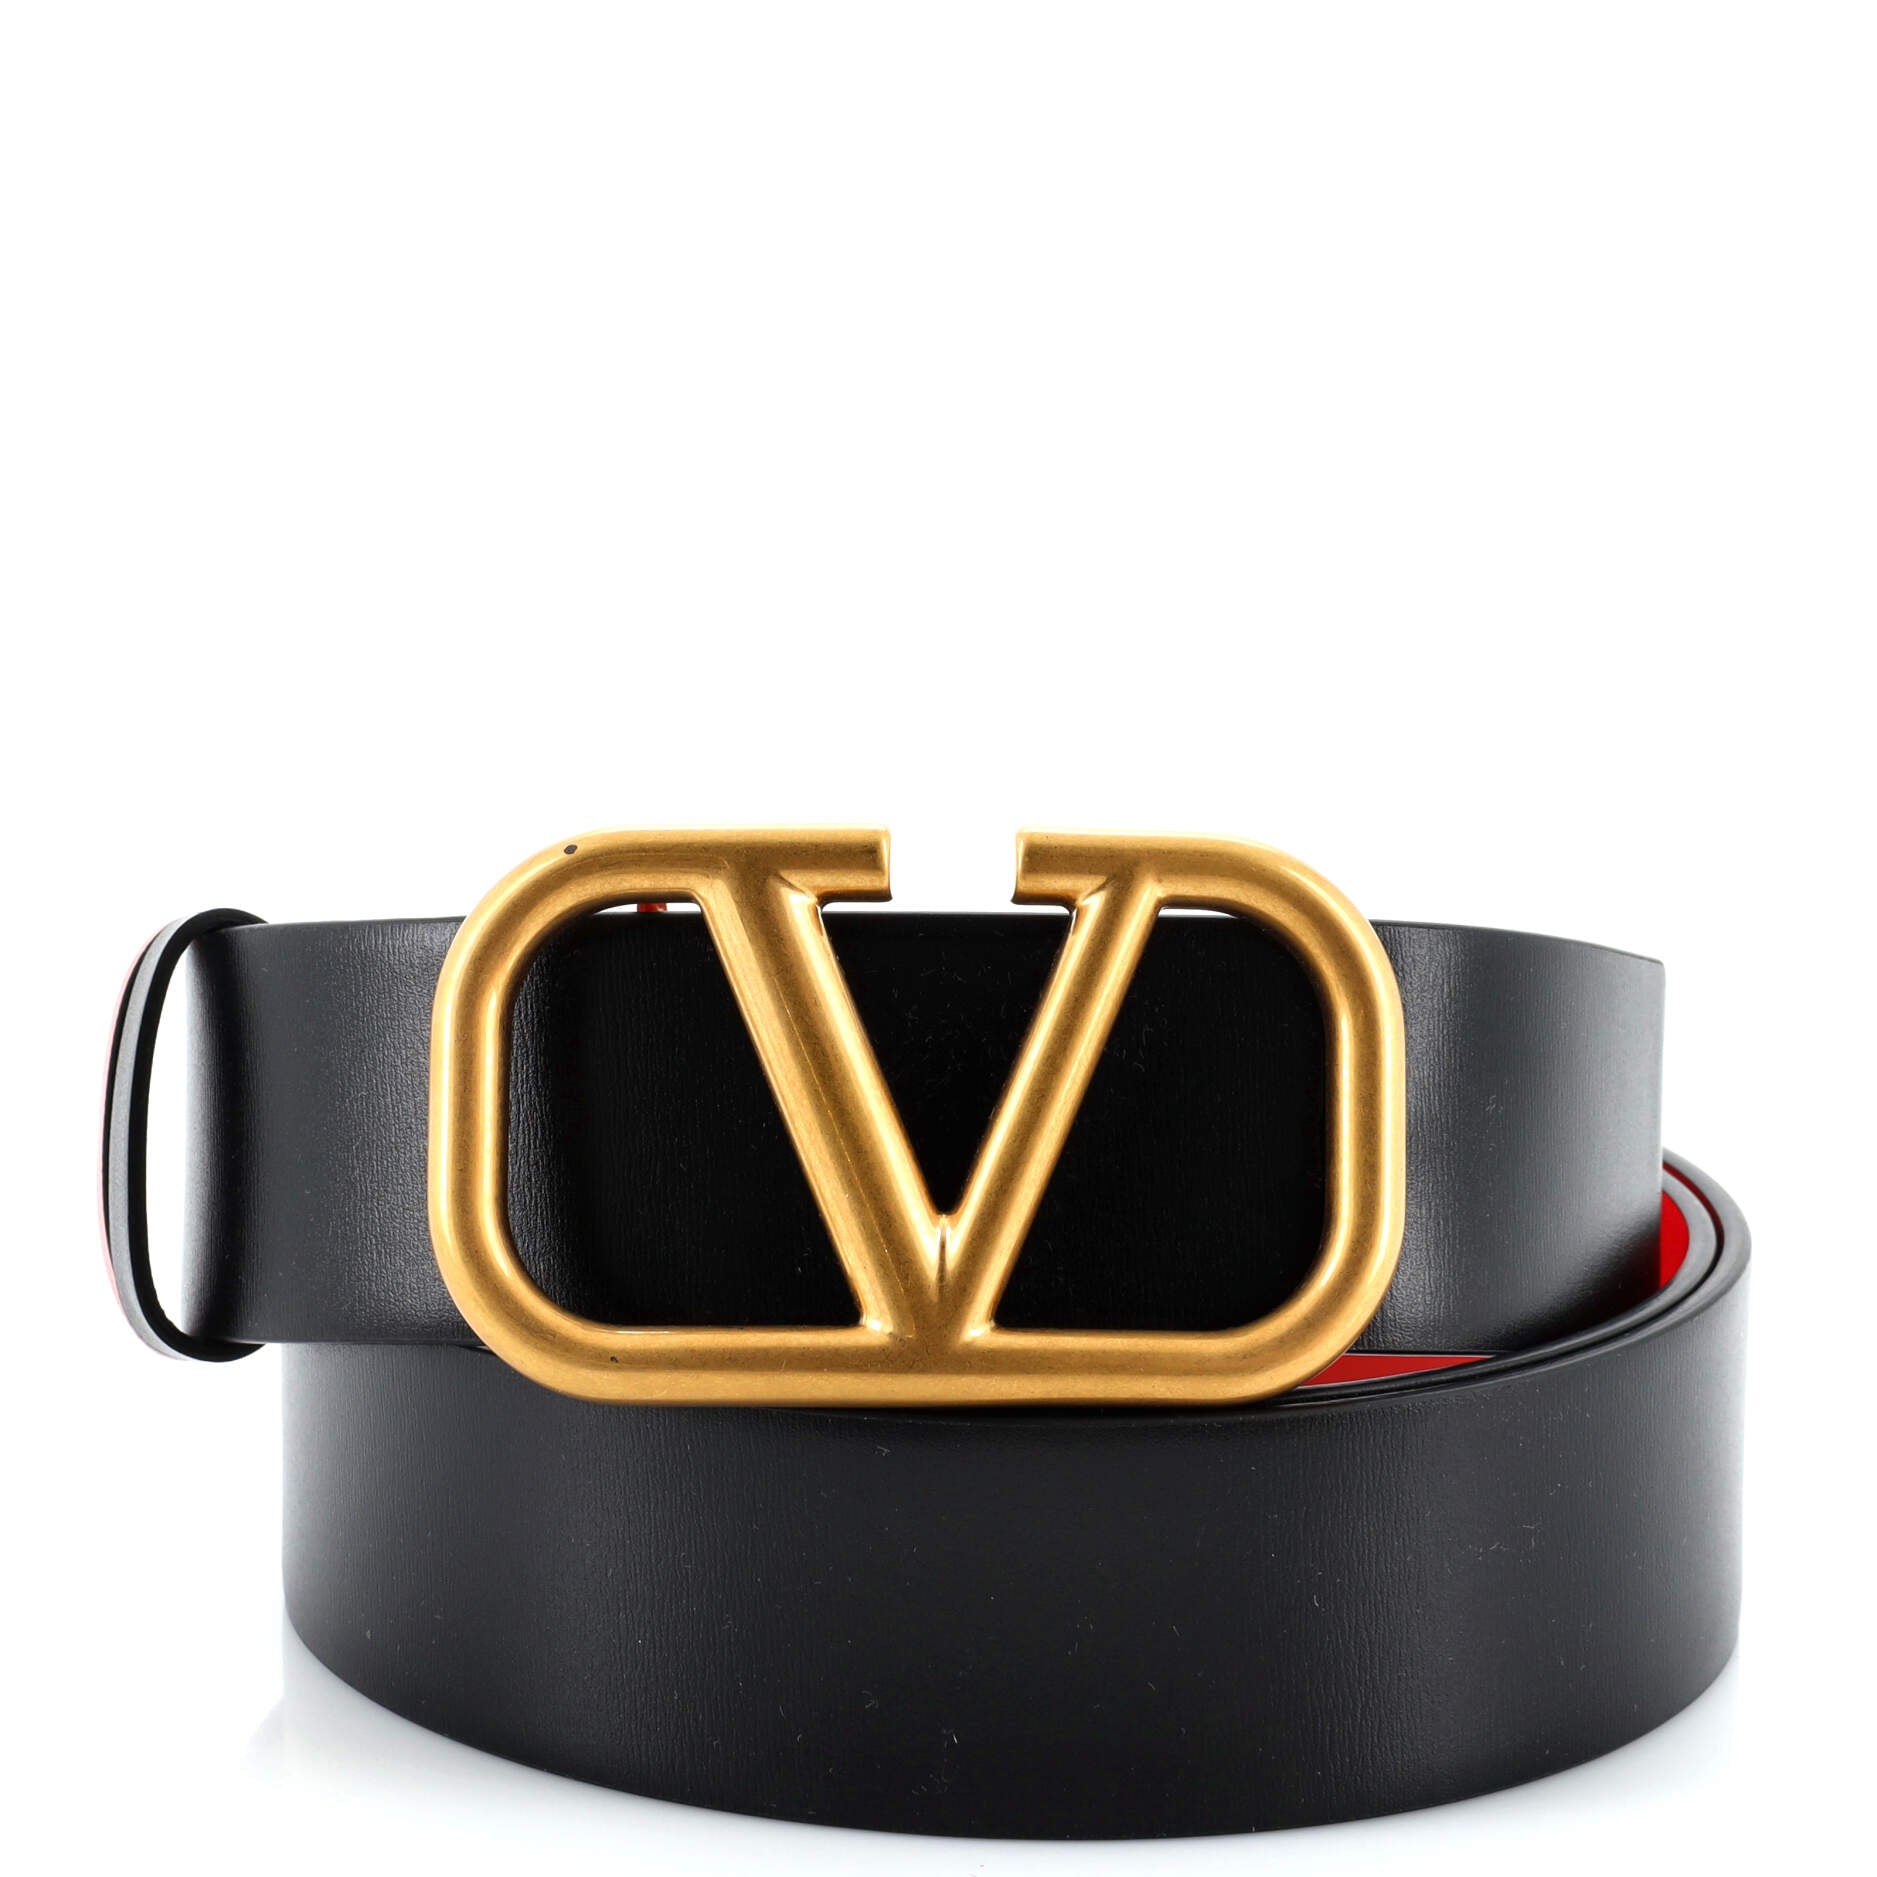 VLogo Reversible Belt Leather Wide 90